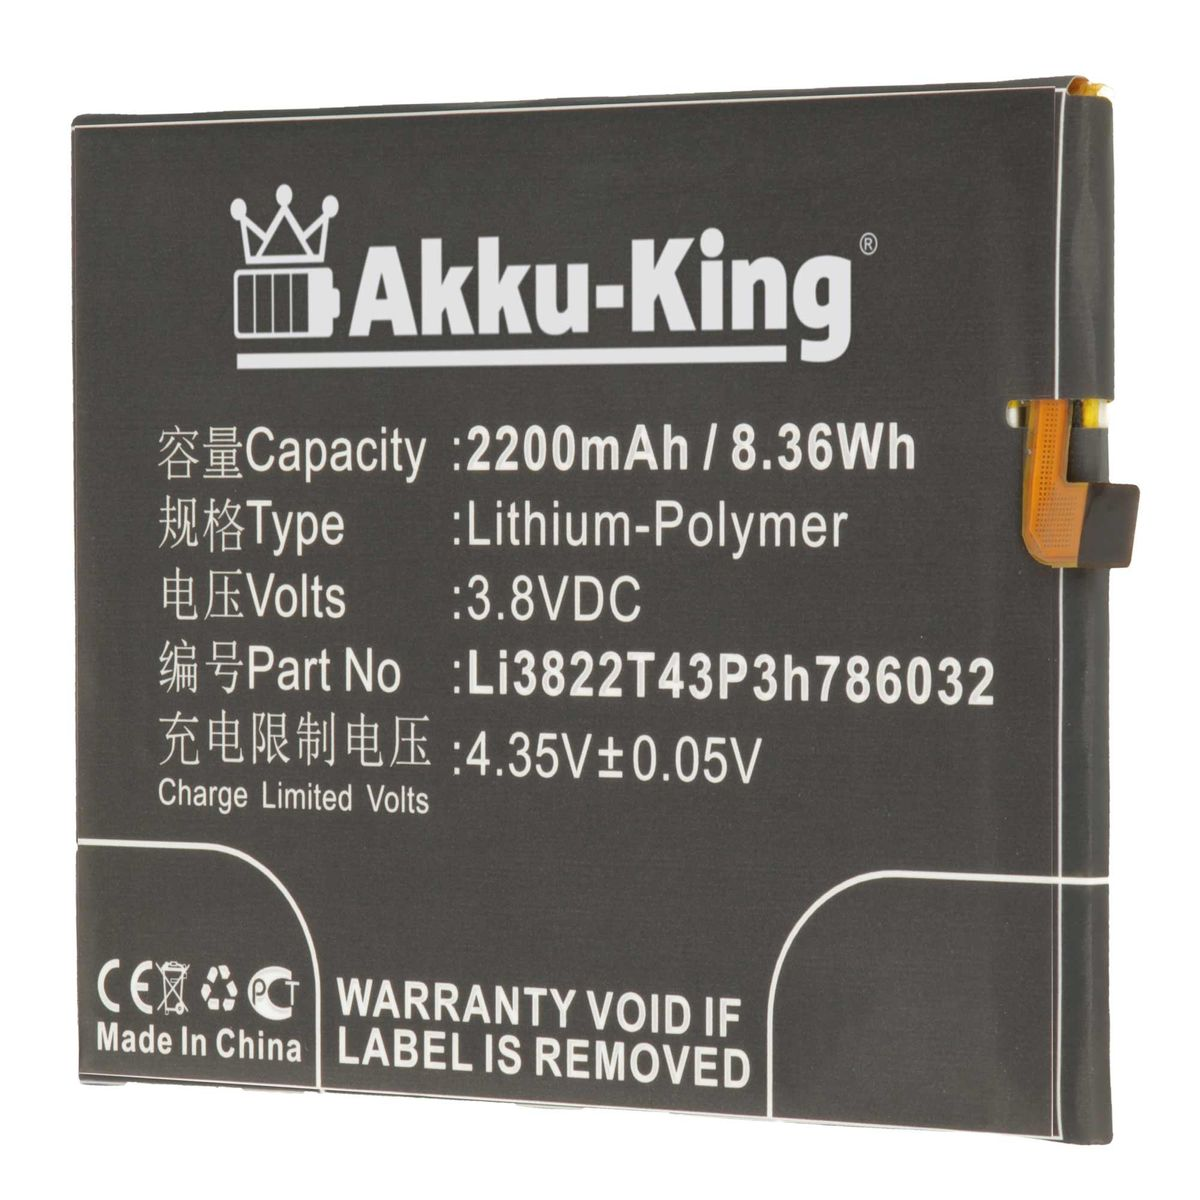 AKKU-KING Akku kompatibel 3.8 Volt, Li-Polymer 2200mAh Handy-Akku, mit ZTE Li3822T43P3h786032